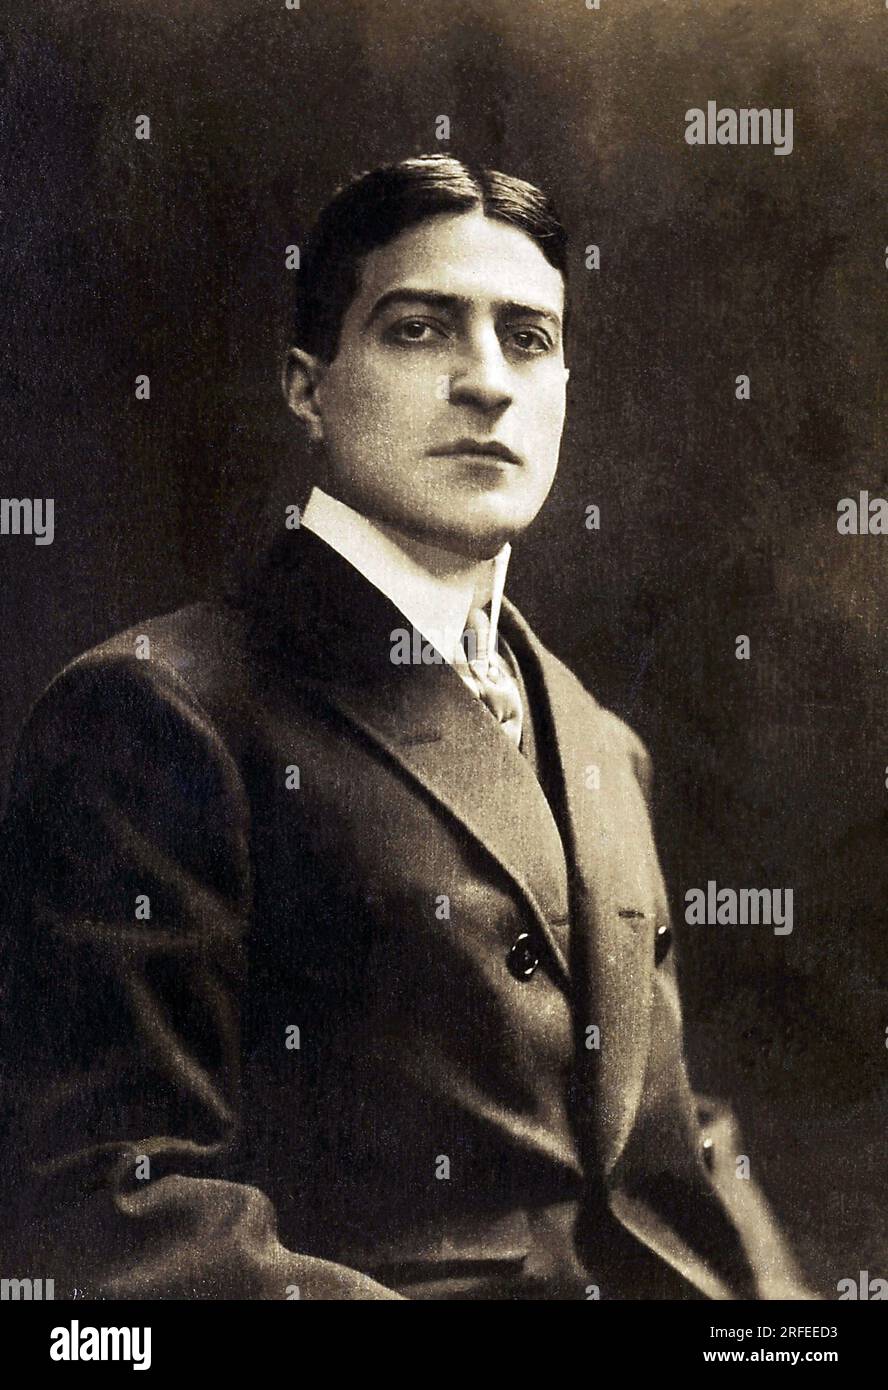 Portrait de Max Dearly (1874-1943), acteur de Cinema francais. Fotografie, Debüt du 20e Siecle. Stockfoto